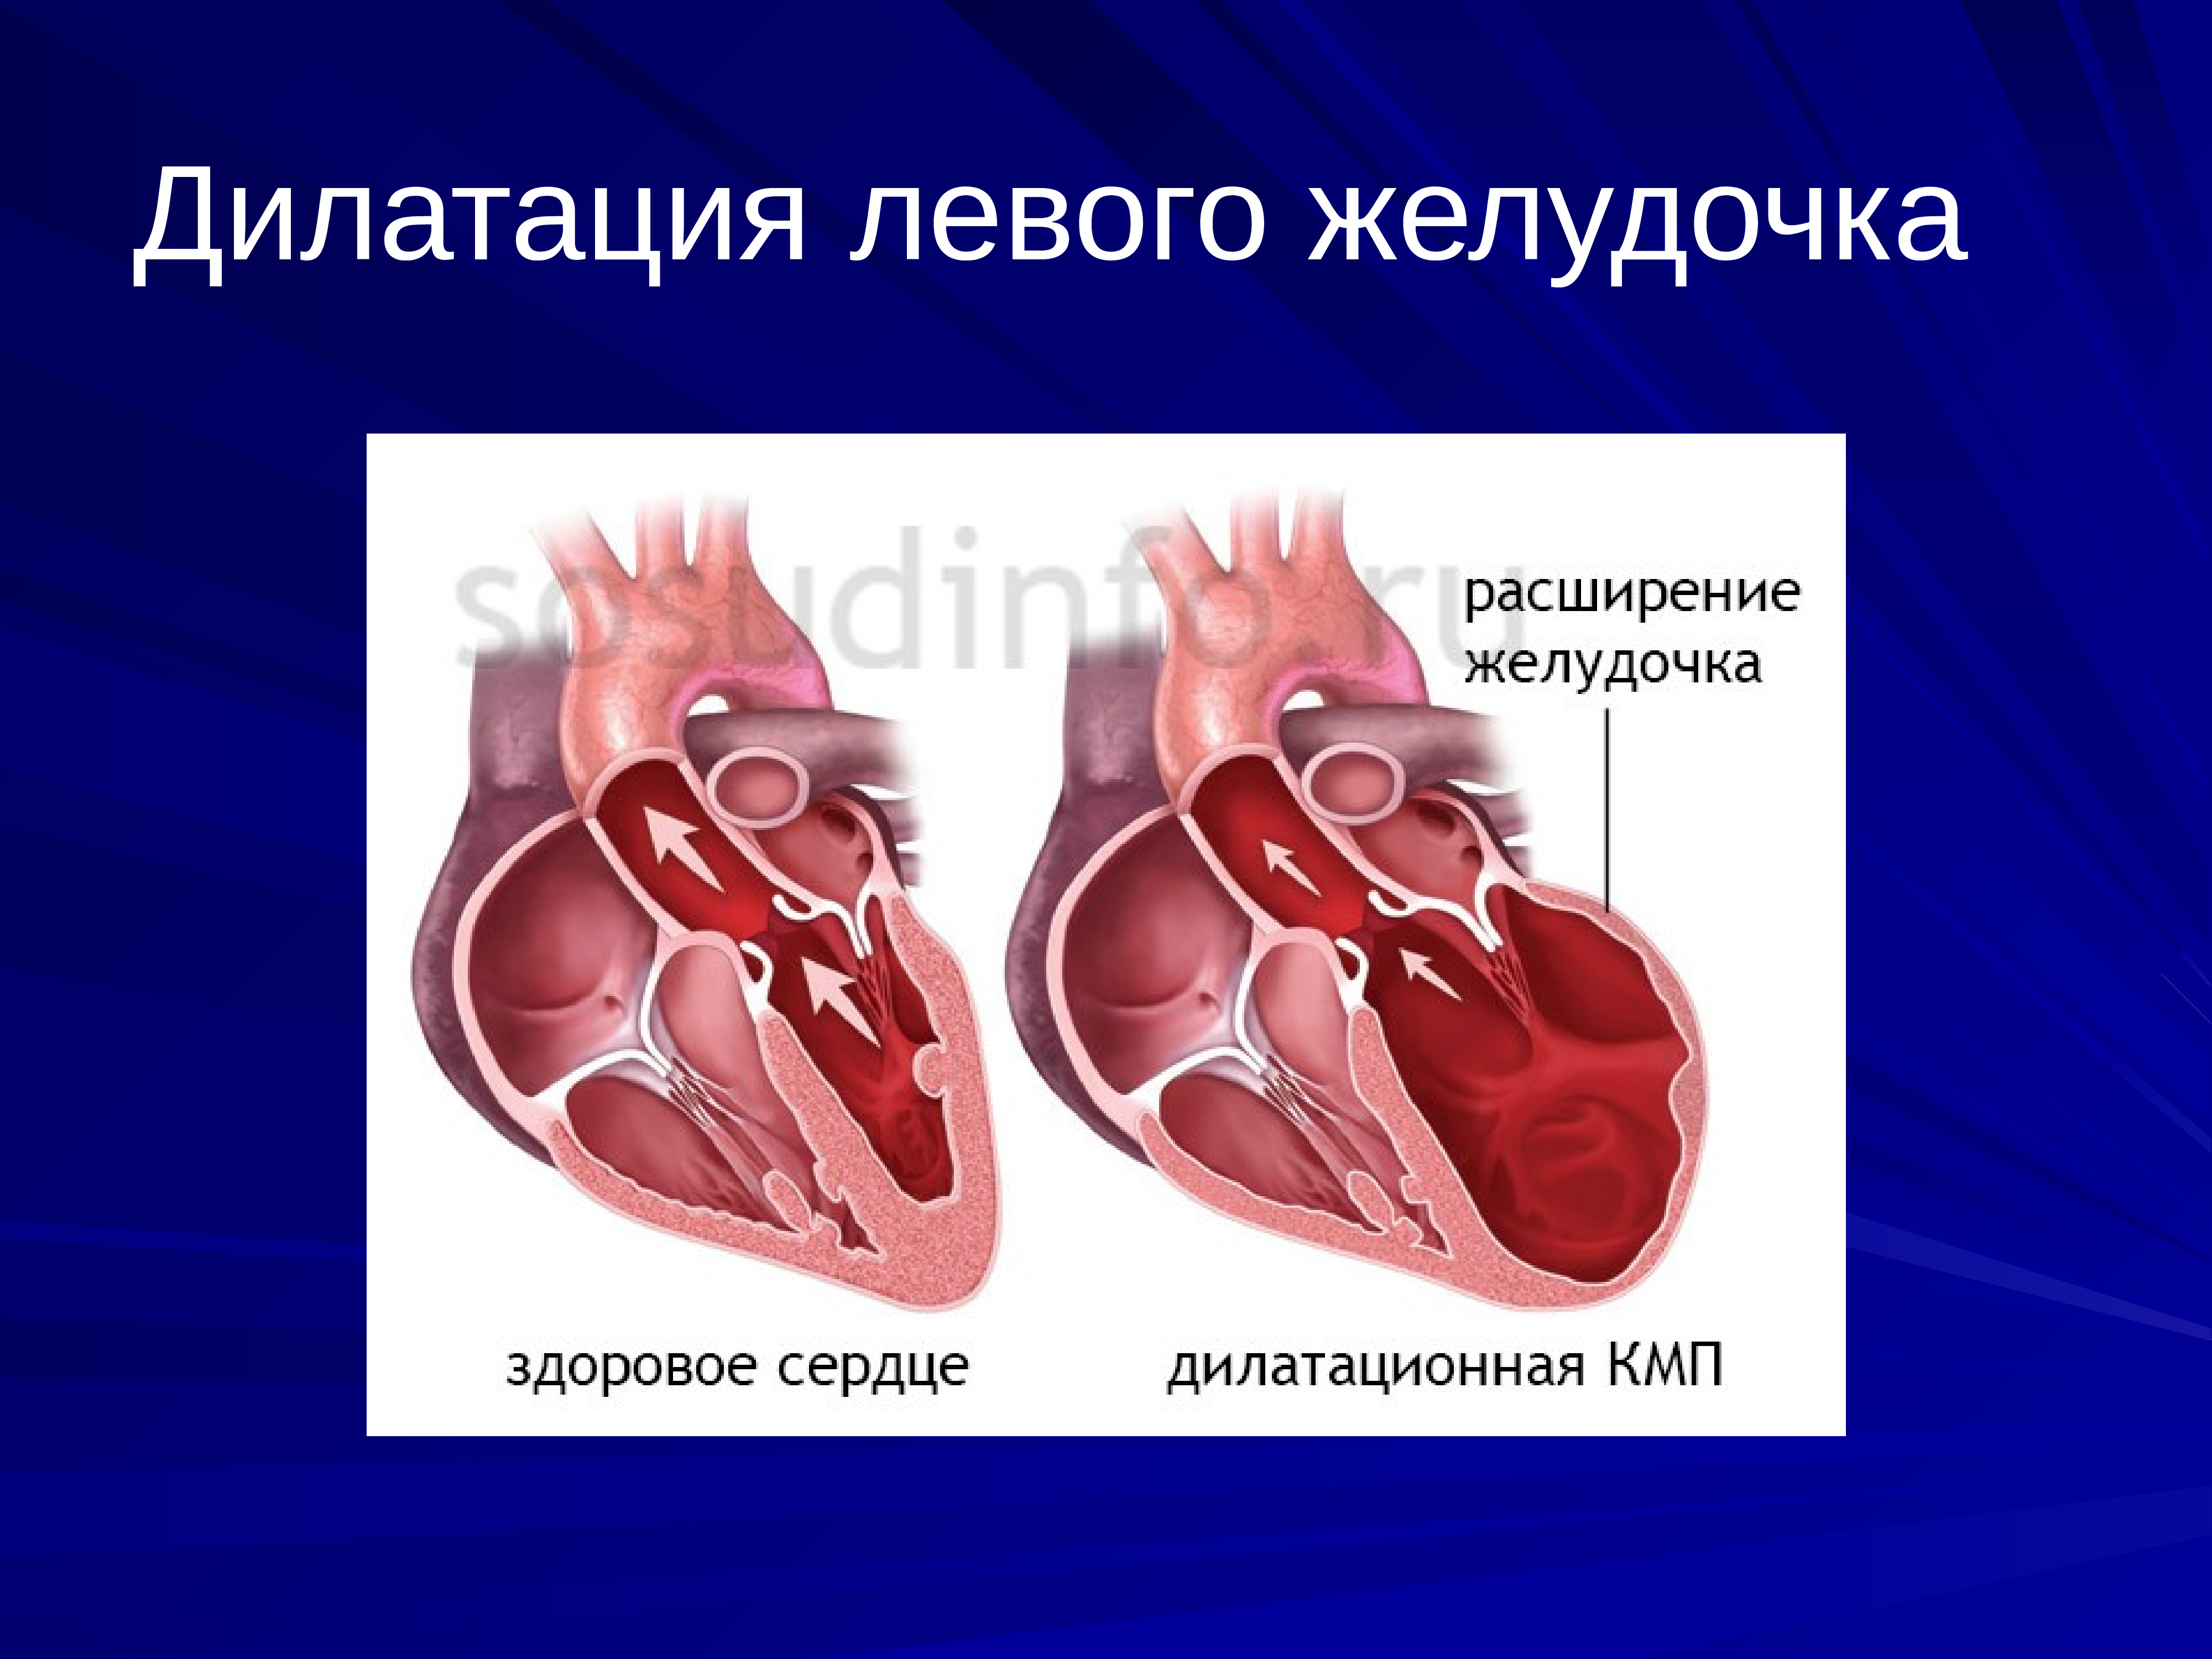 Дилатация левого желудочка что это. Дилатация предсердий и желудочков. Дилатация левого желудочка сердца. Дилатация желудочков сердца. Дилатация левых отделов сердца.